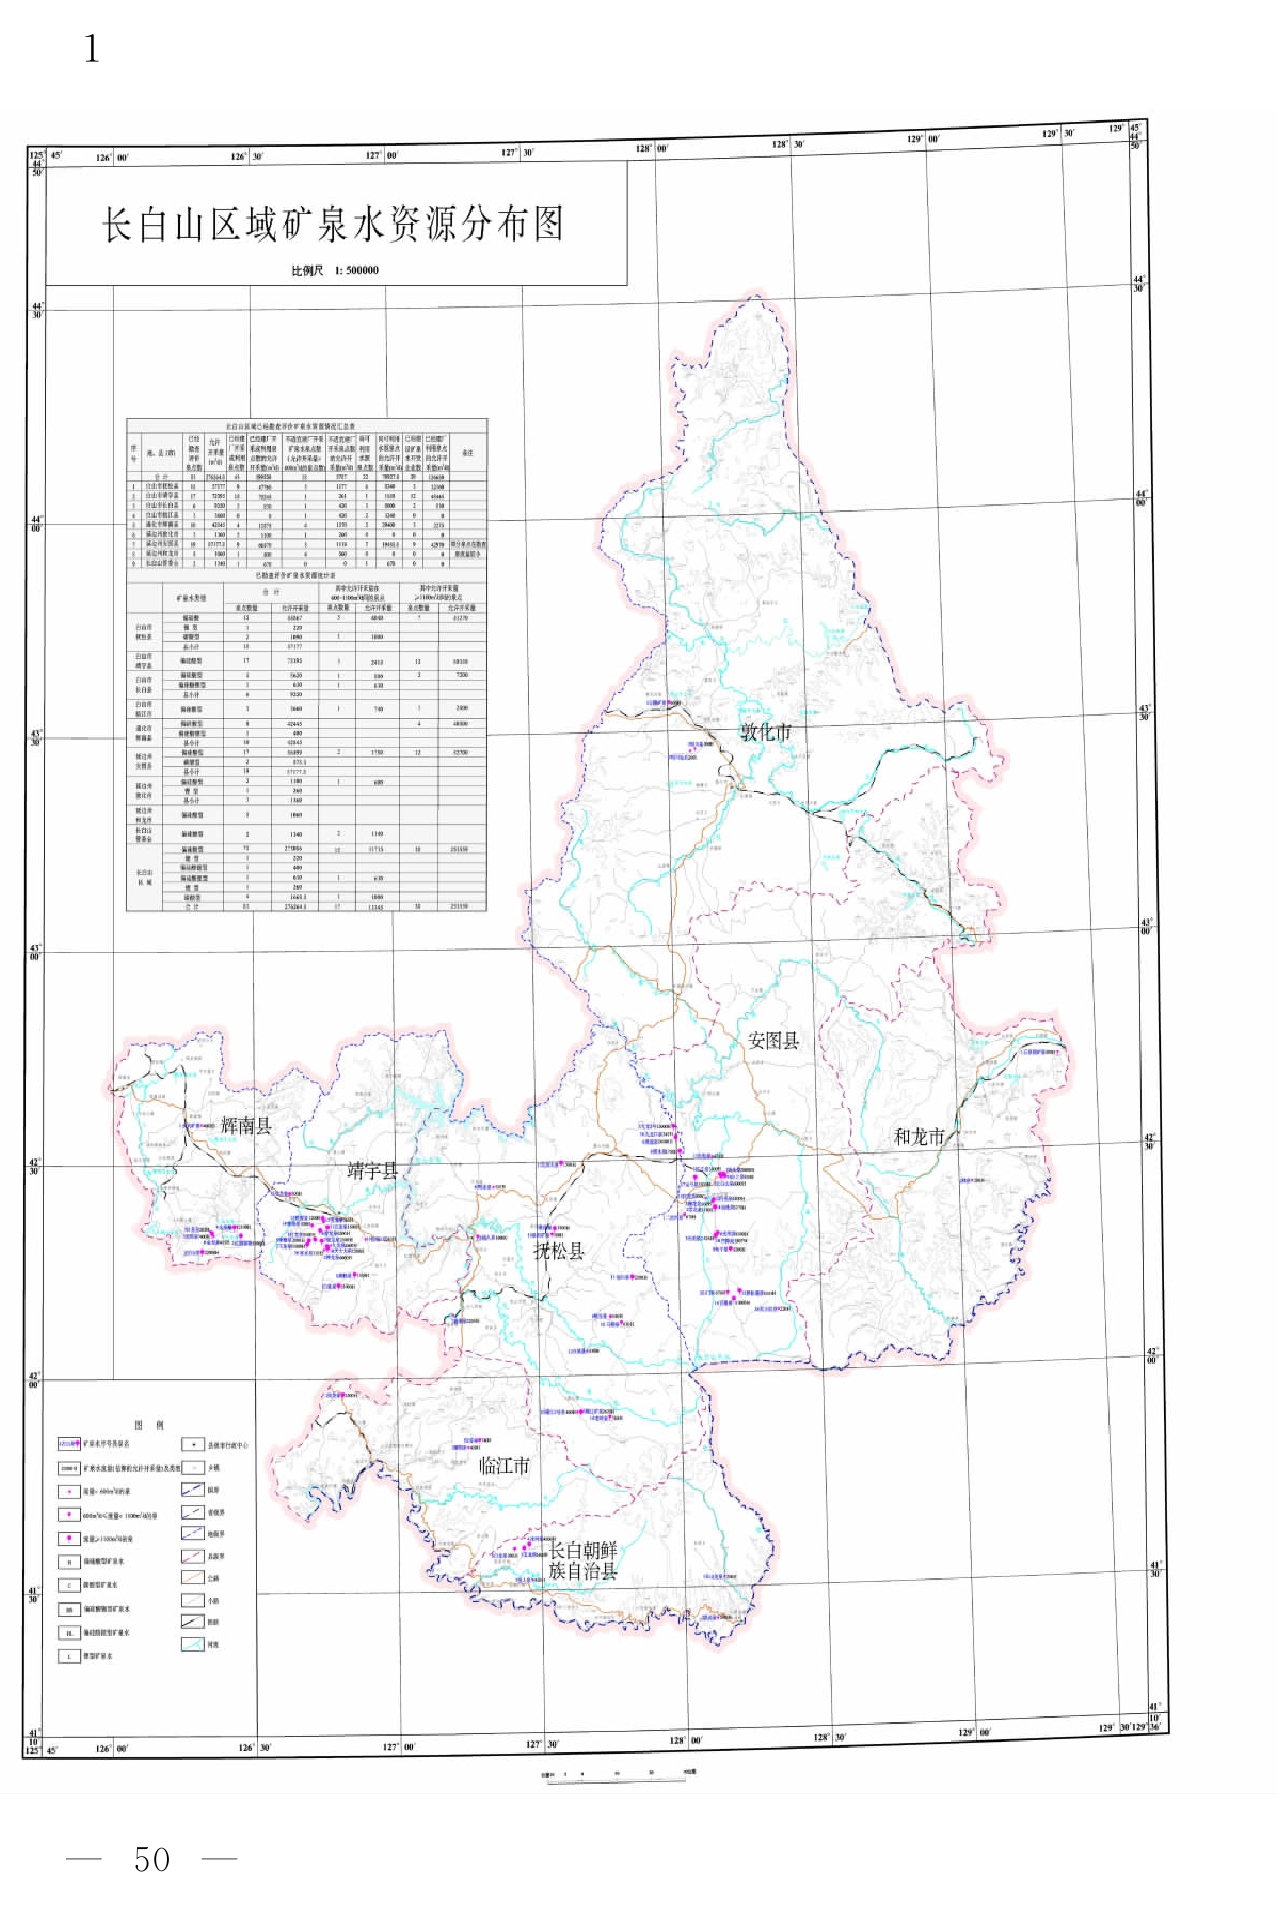 長白山區域礦泉水資源分布圖